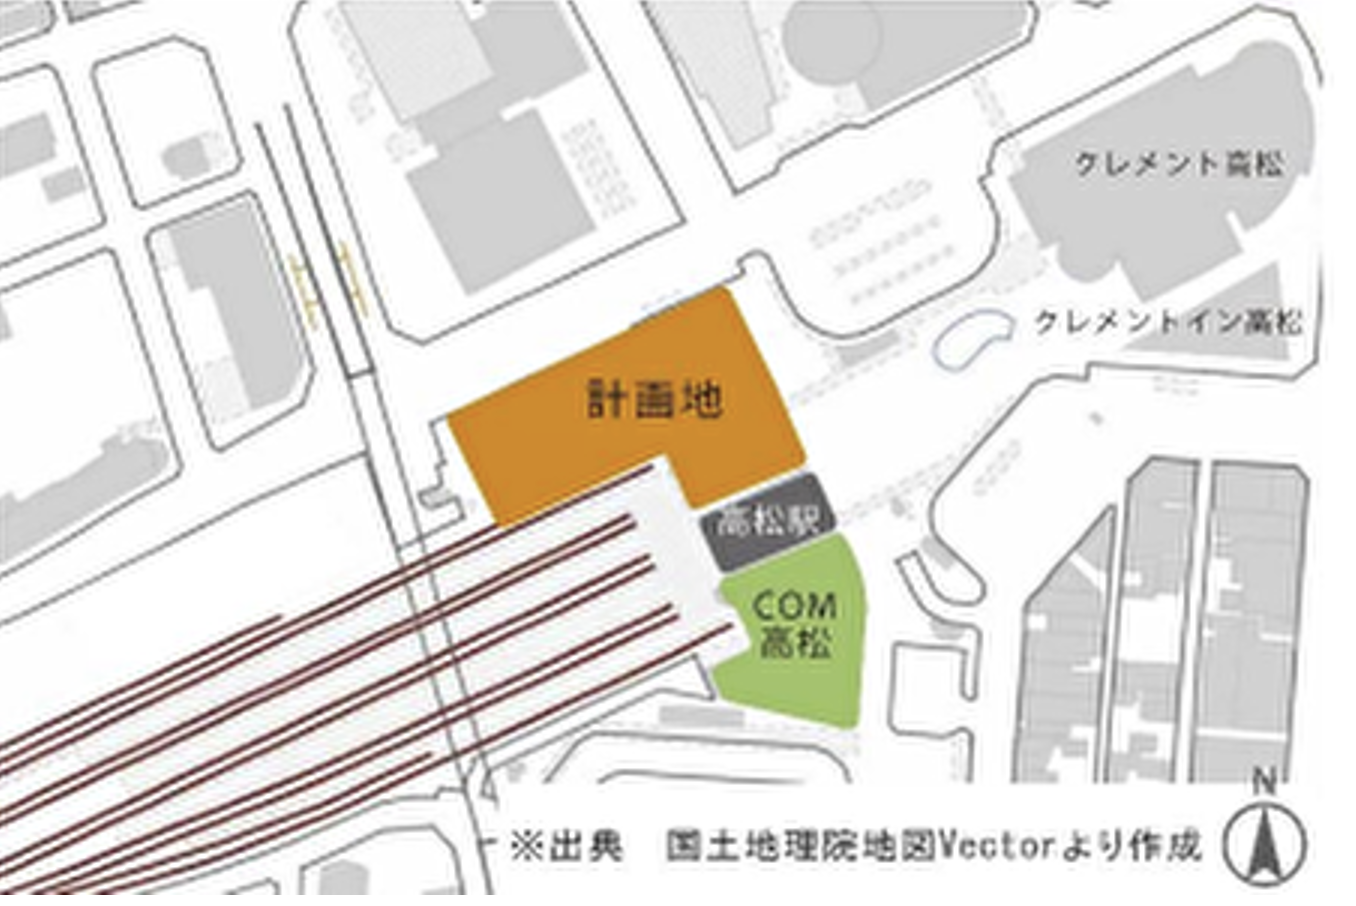 開発予定地は2019年以降空地となっている区画と駐車場として利用されているエリア。 ※引用：JR四国 